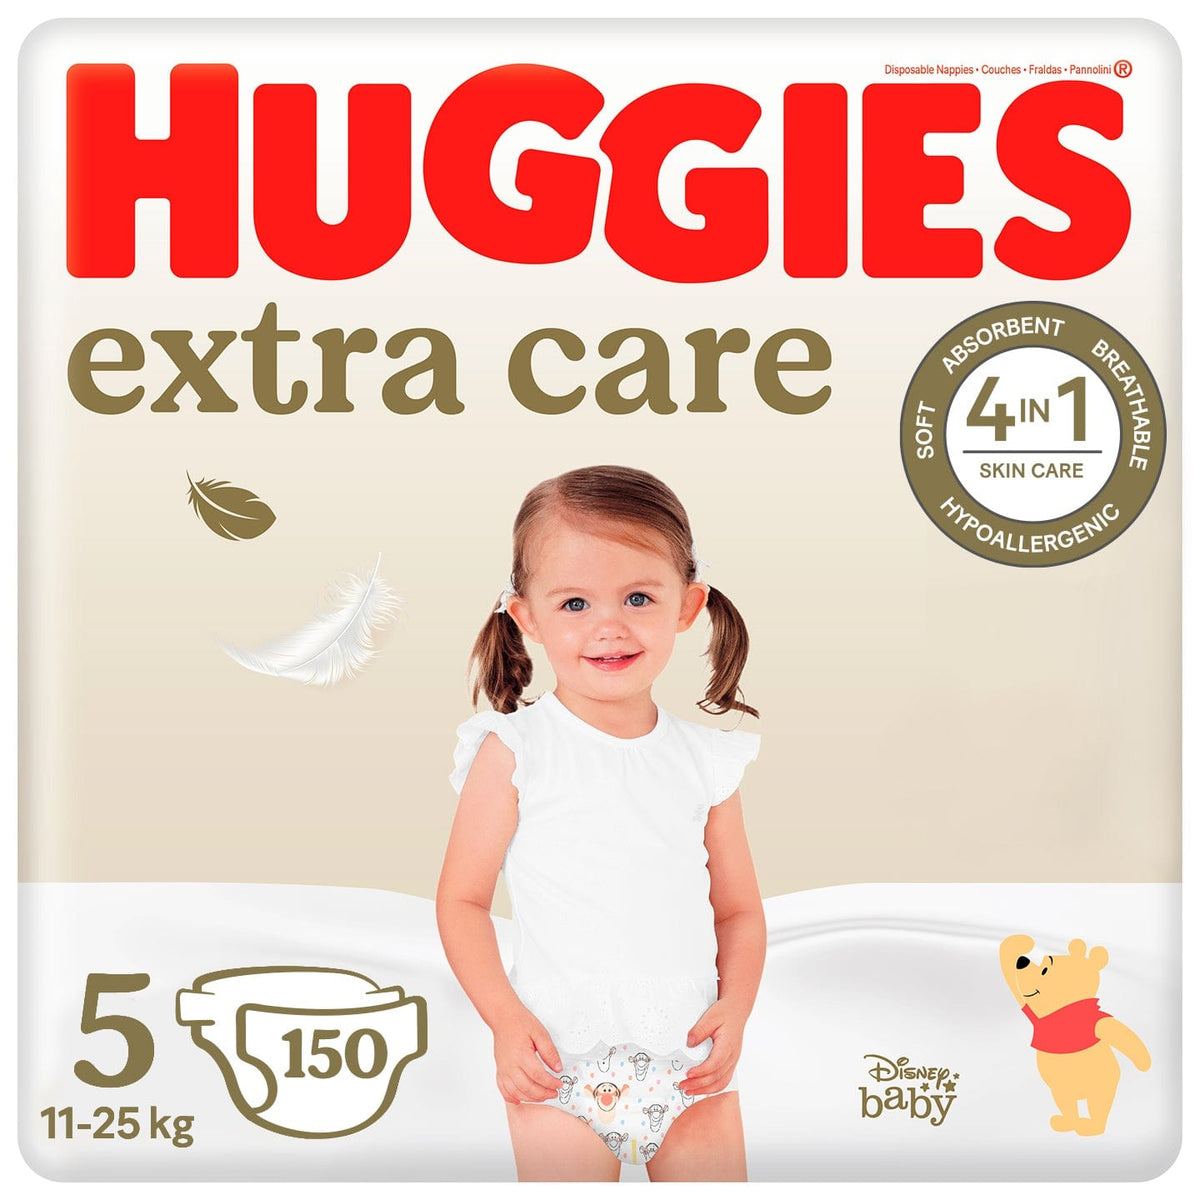 Produkt HUGGIES Pieluchy HUGGIES Extra Care Mega 5 (11-25kg) pieluchy 150 szt + Chusteczki nawilżane dla dzieci HUGGIES Pure Extra Care 448 szt Z00467